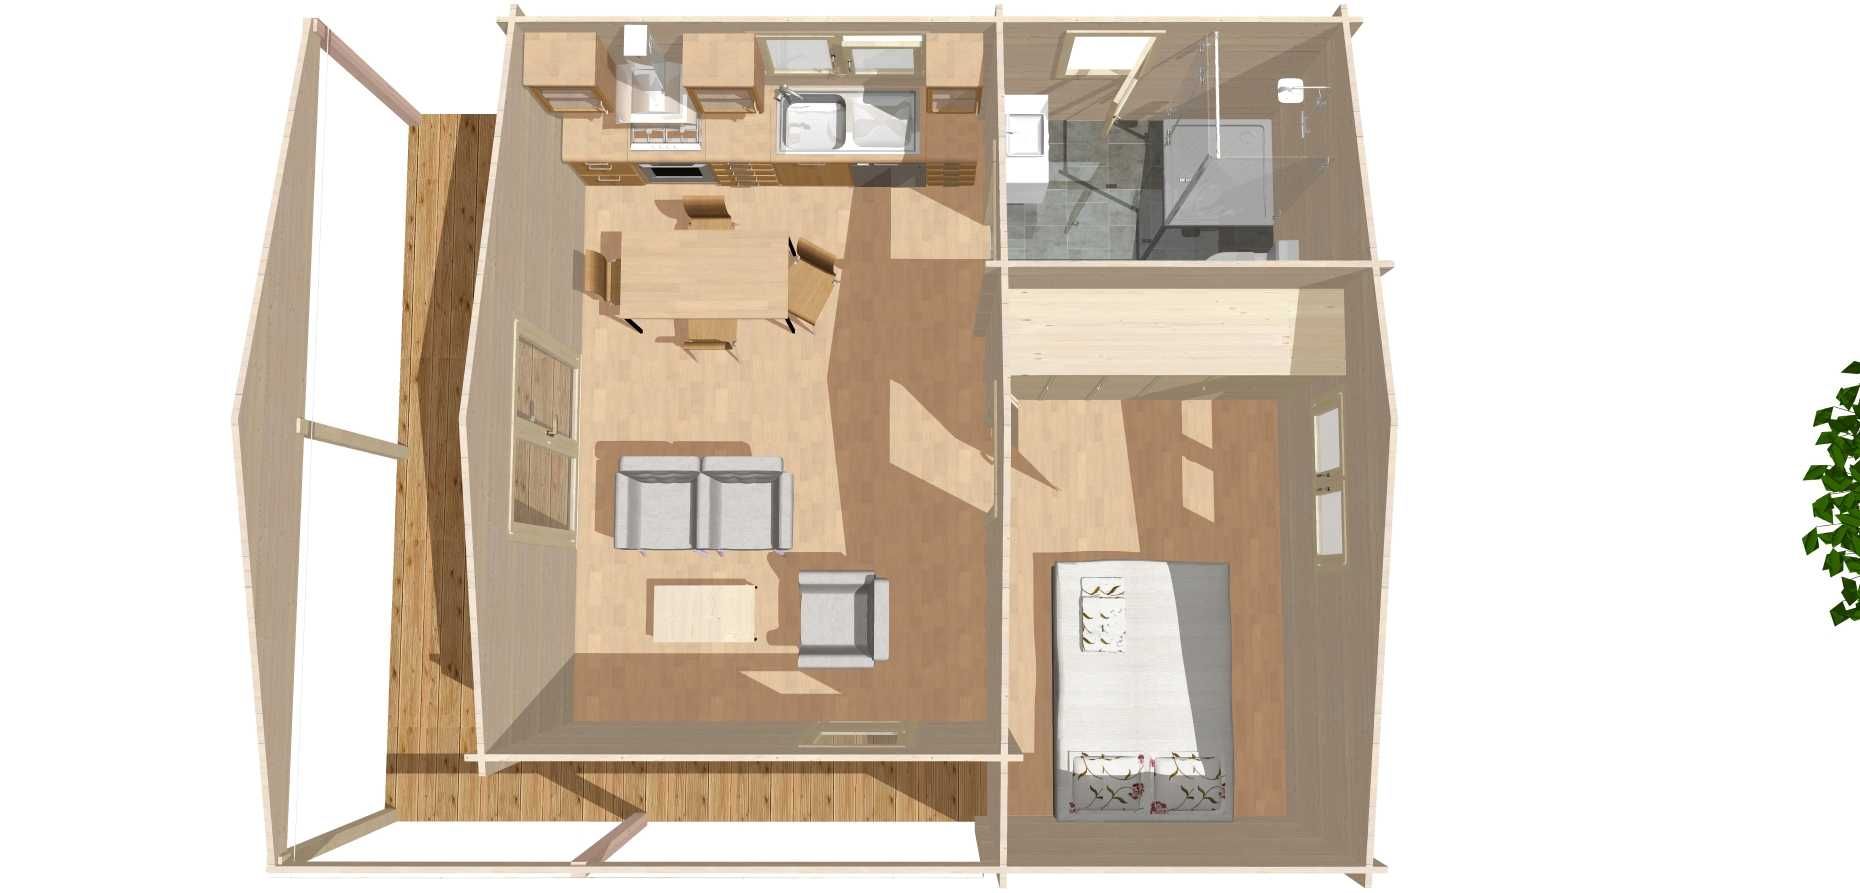 T1 "SIMPLES" total 46m² - interior 30m² Casa de madeira Pré fabricada